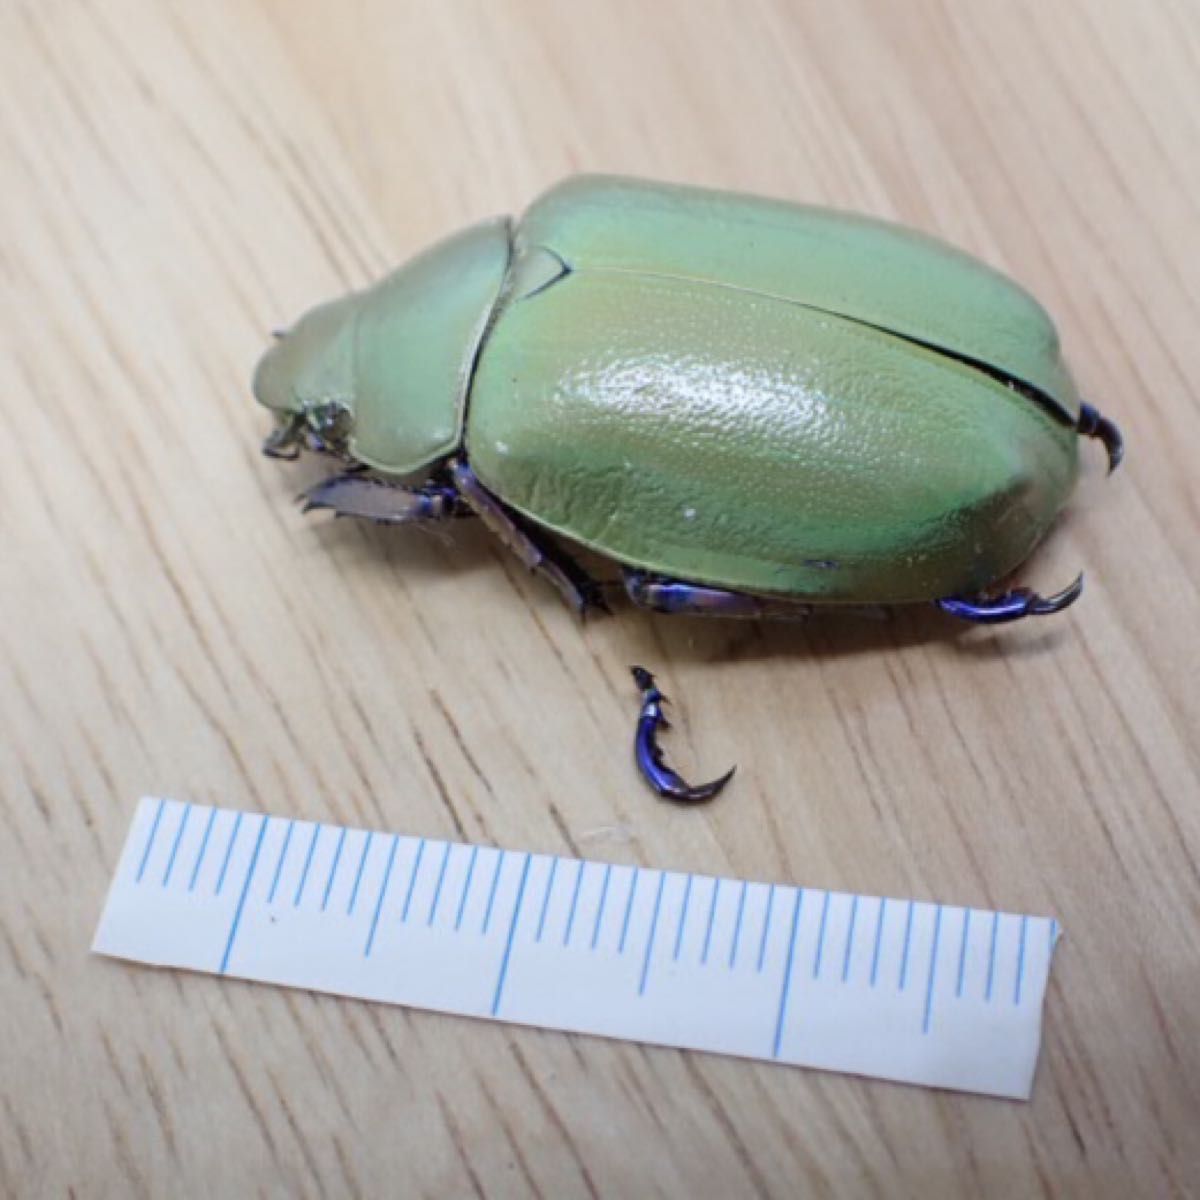 [昆虫標本] Chrysina erubescens no.173 メキシコの宝石コガネムシ